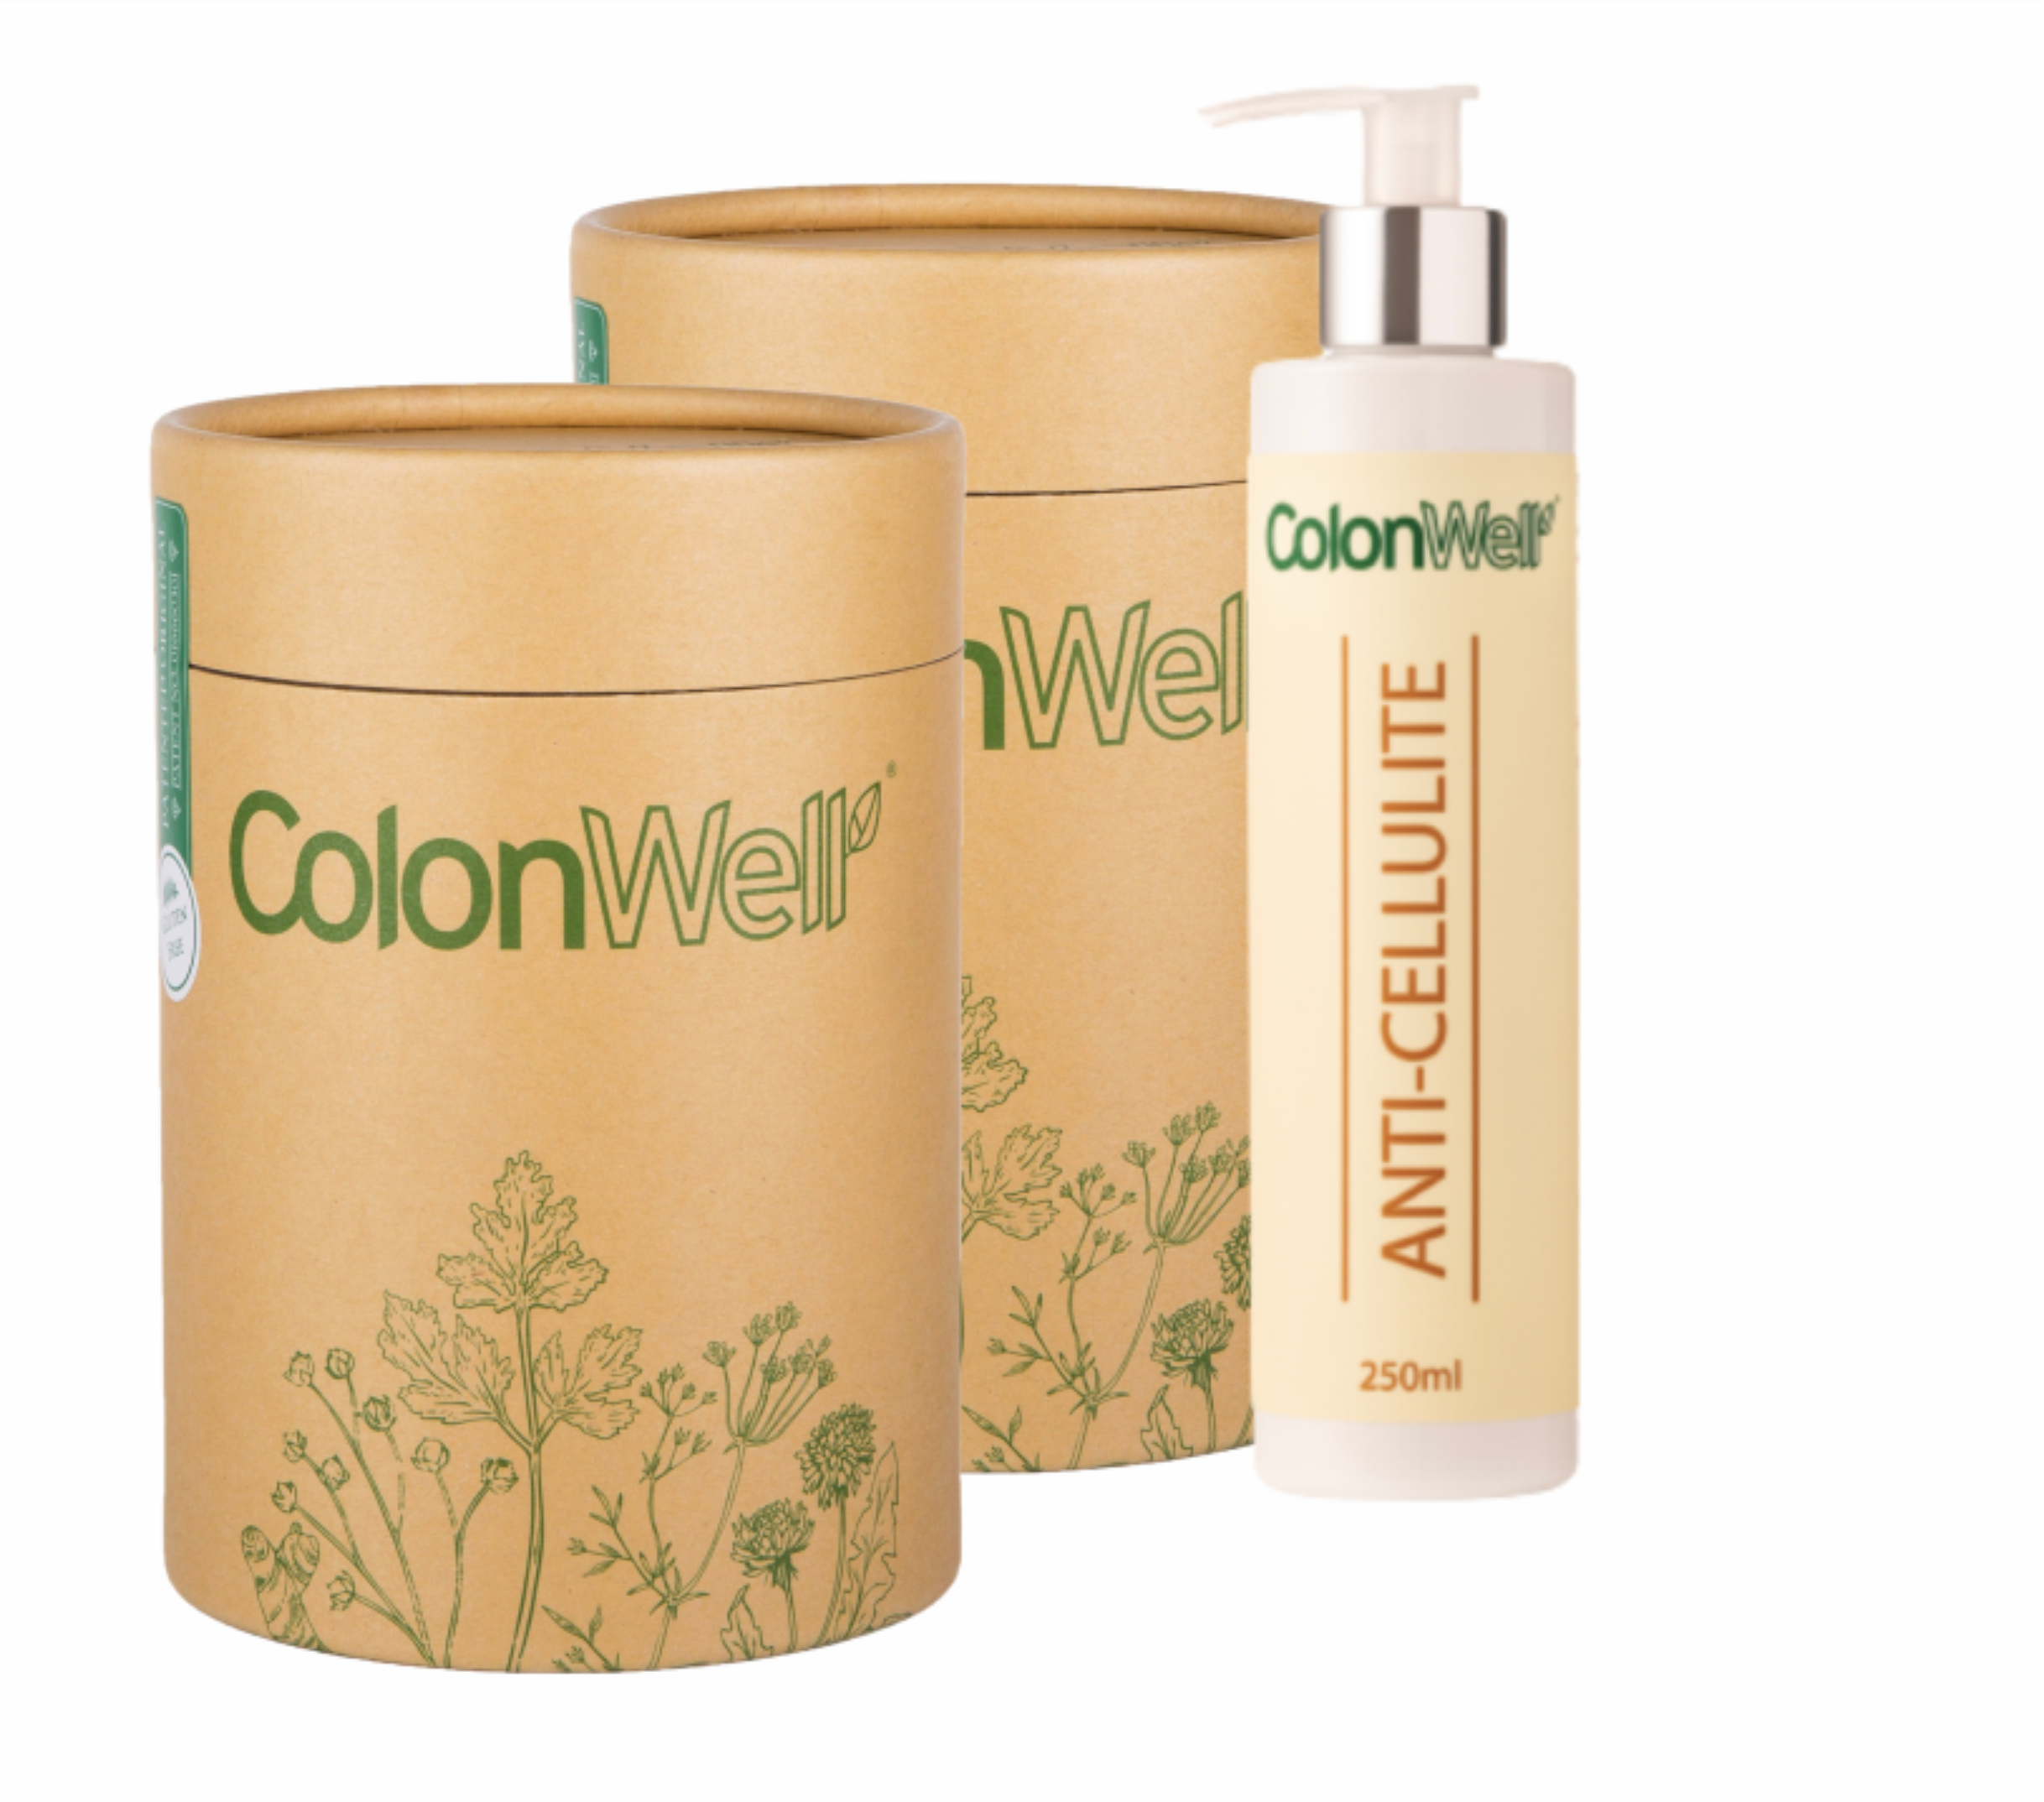 Colonwell.lt produktas - AKCIJA! 2vnt. ColonWell + DOVANA Anticeliulitinis kremas